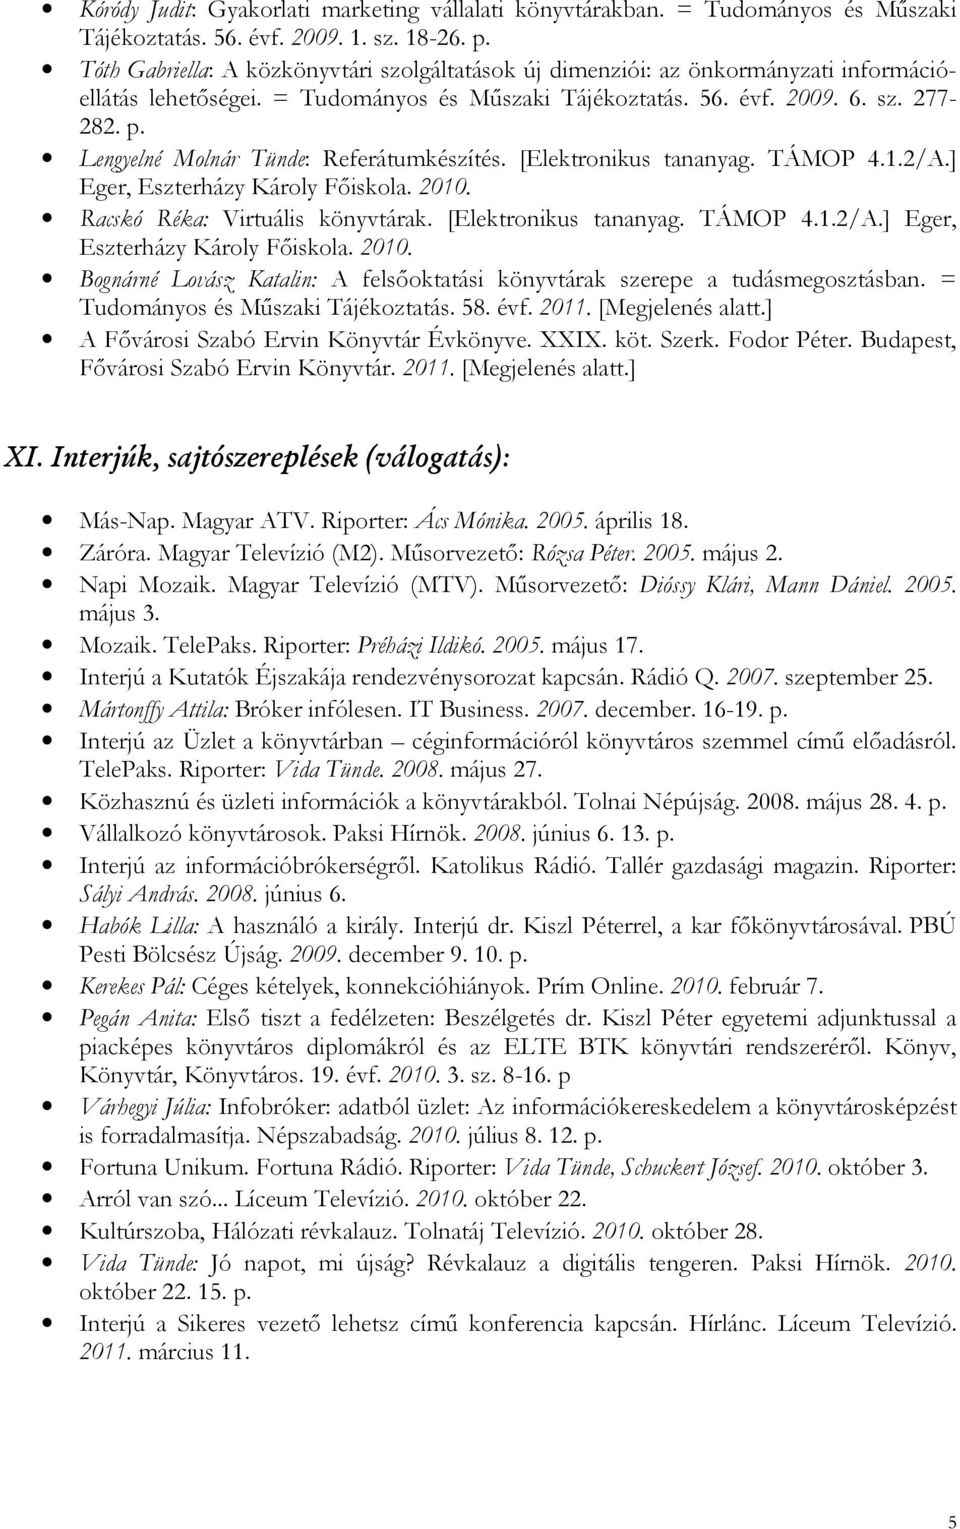 Lengyelné Molnár Tünde: Referátumkészítés. [Elektronikus tananyag. TÁMOP 4.1.2/A.] Eger, Eszterházy Károly Fıiskola. 2010.